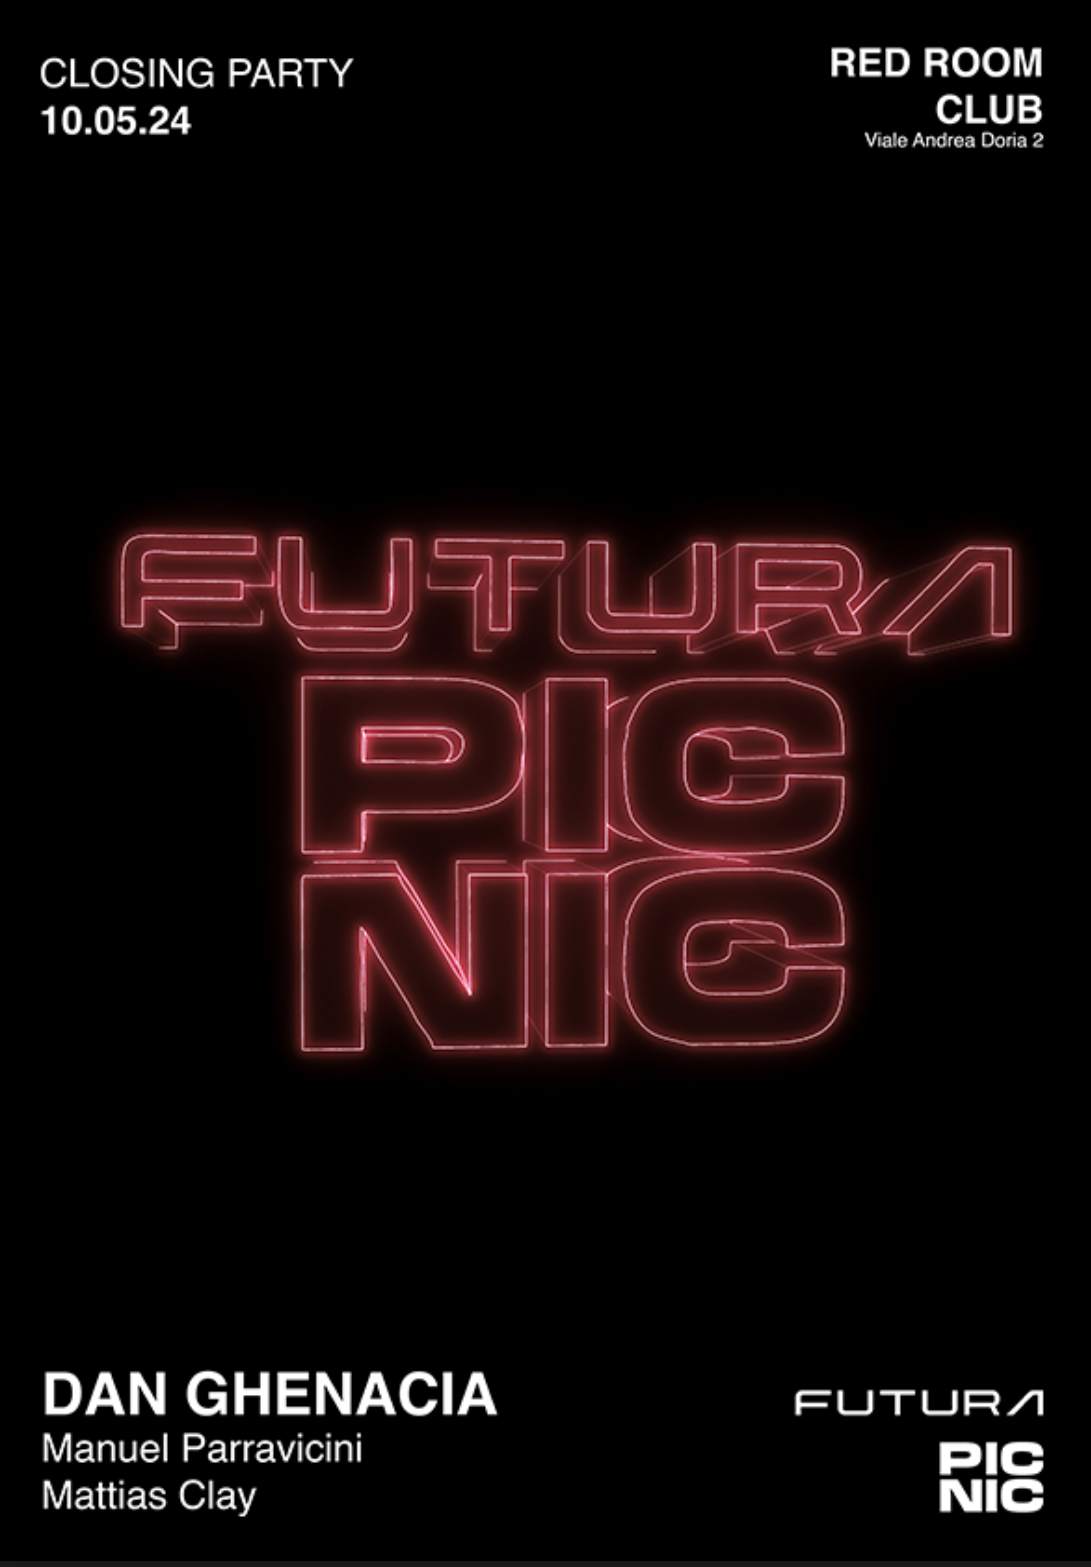 PICNIC X FUTURA - フライヤー表